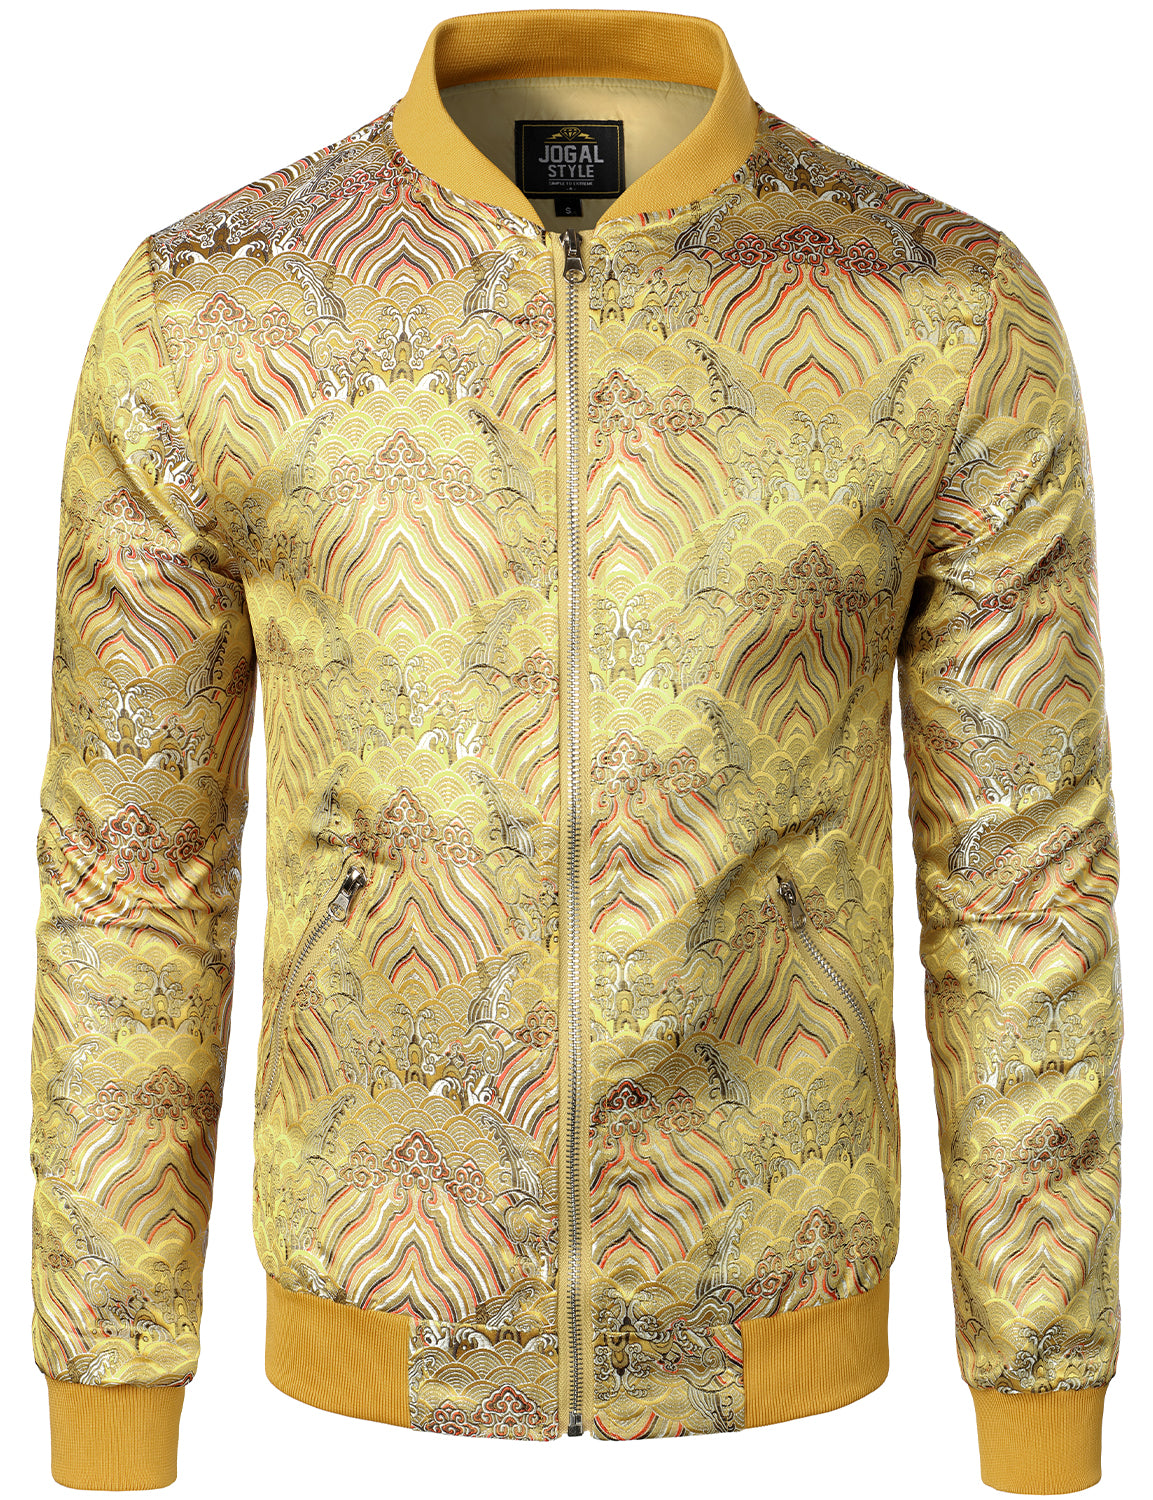 JOGAL Men's Vintage Embroidered Satin Flight Bomber Jacket Coat